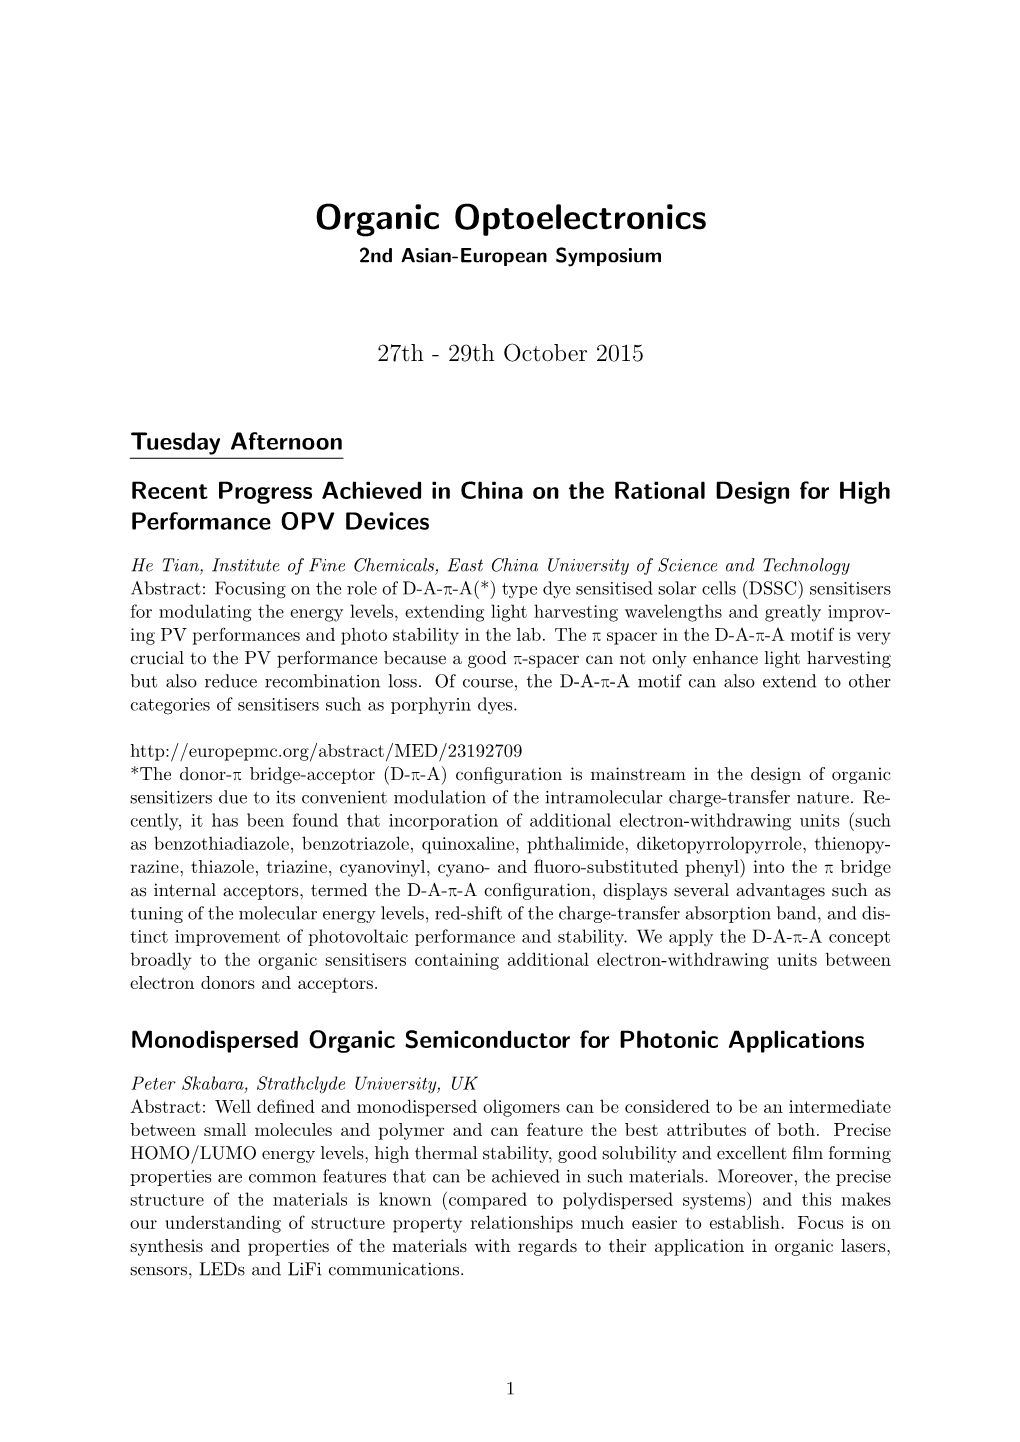 Organic Optoelectronics 2Nd Asian-European Symposium